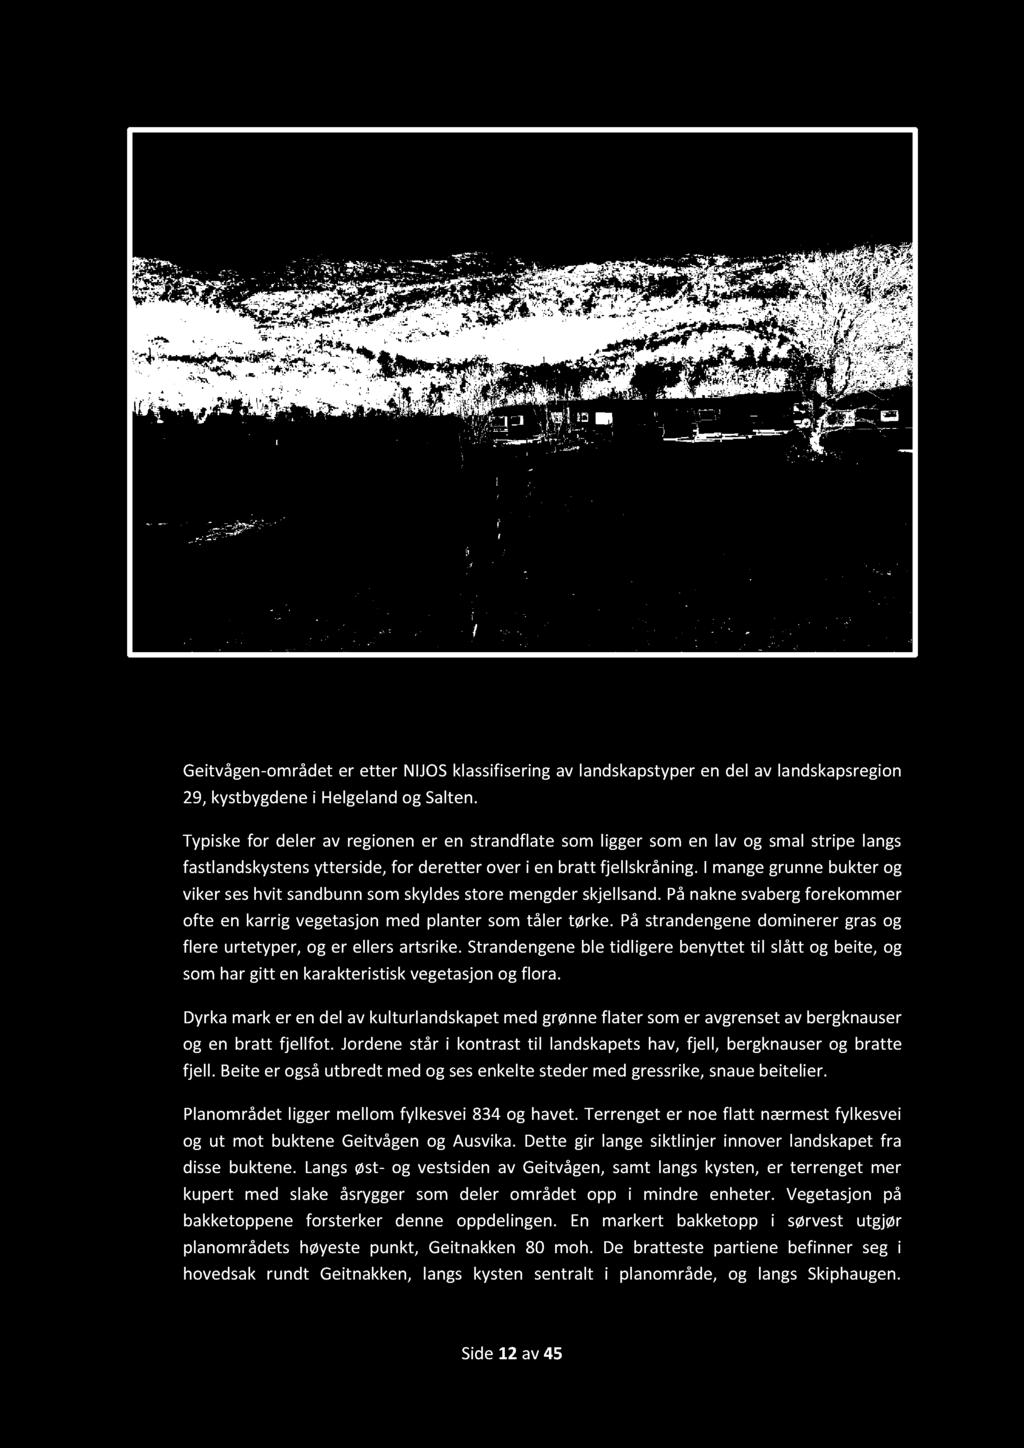 Foto fra befaring november 2013. Kristoffer L. Seivåg. 5.4 Landskap Geitvågen - området er etter NIJOS klassifisering av landskapstyper en del av landskapsregion 29, kystbygdene i Helgeland og Salten.